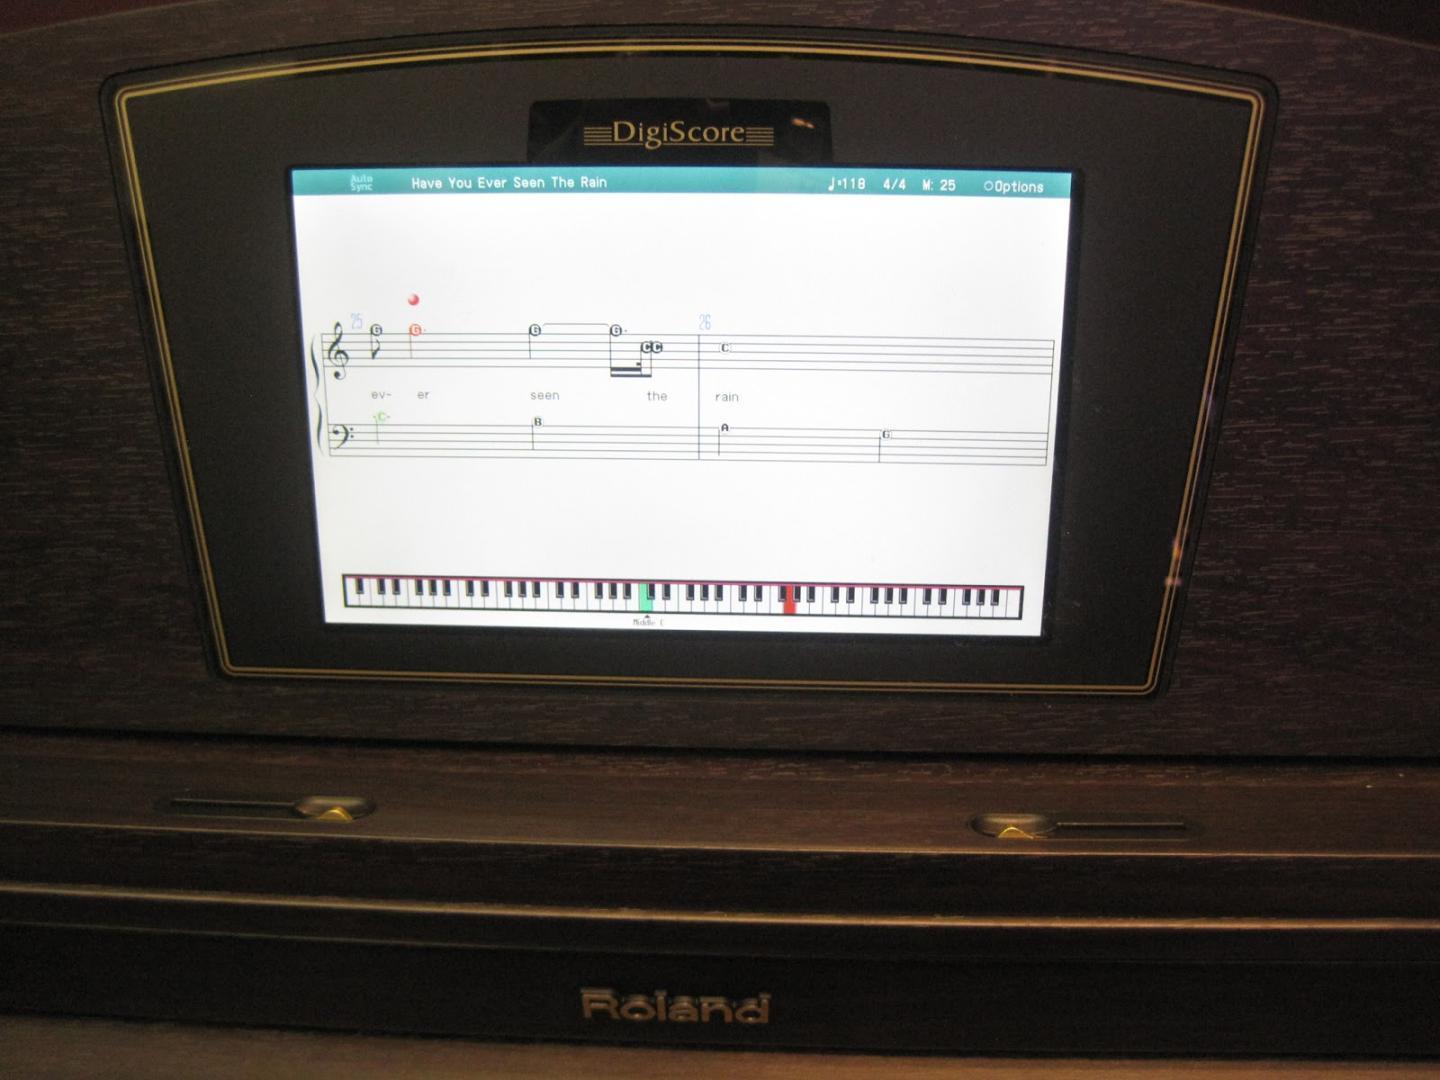 Roland’s DigiScore Roland HPi 50 LW